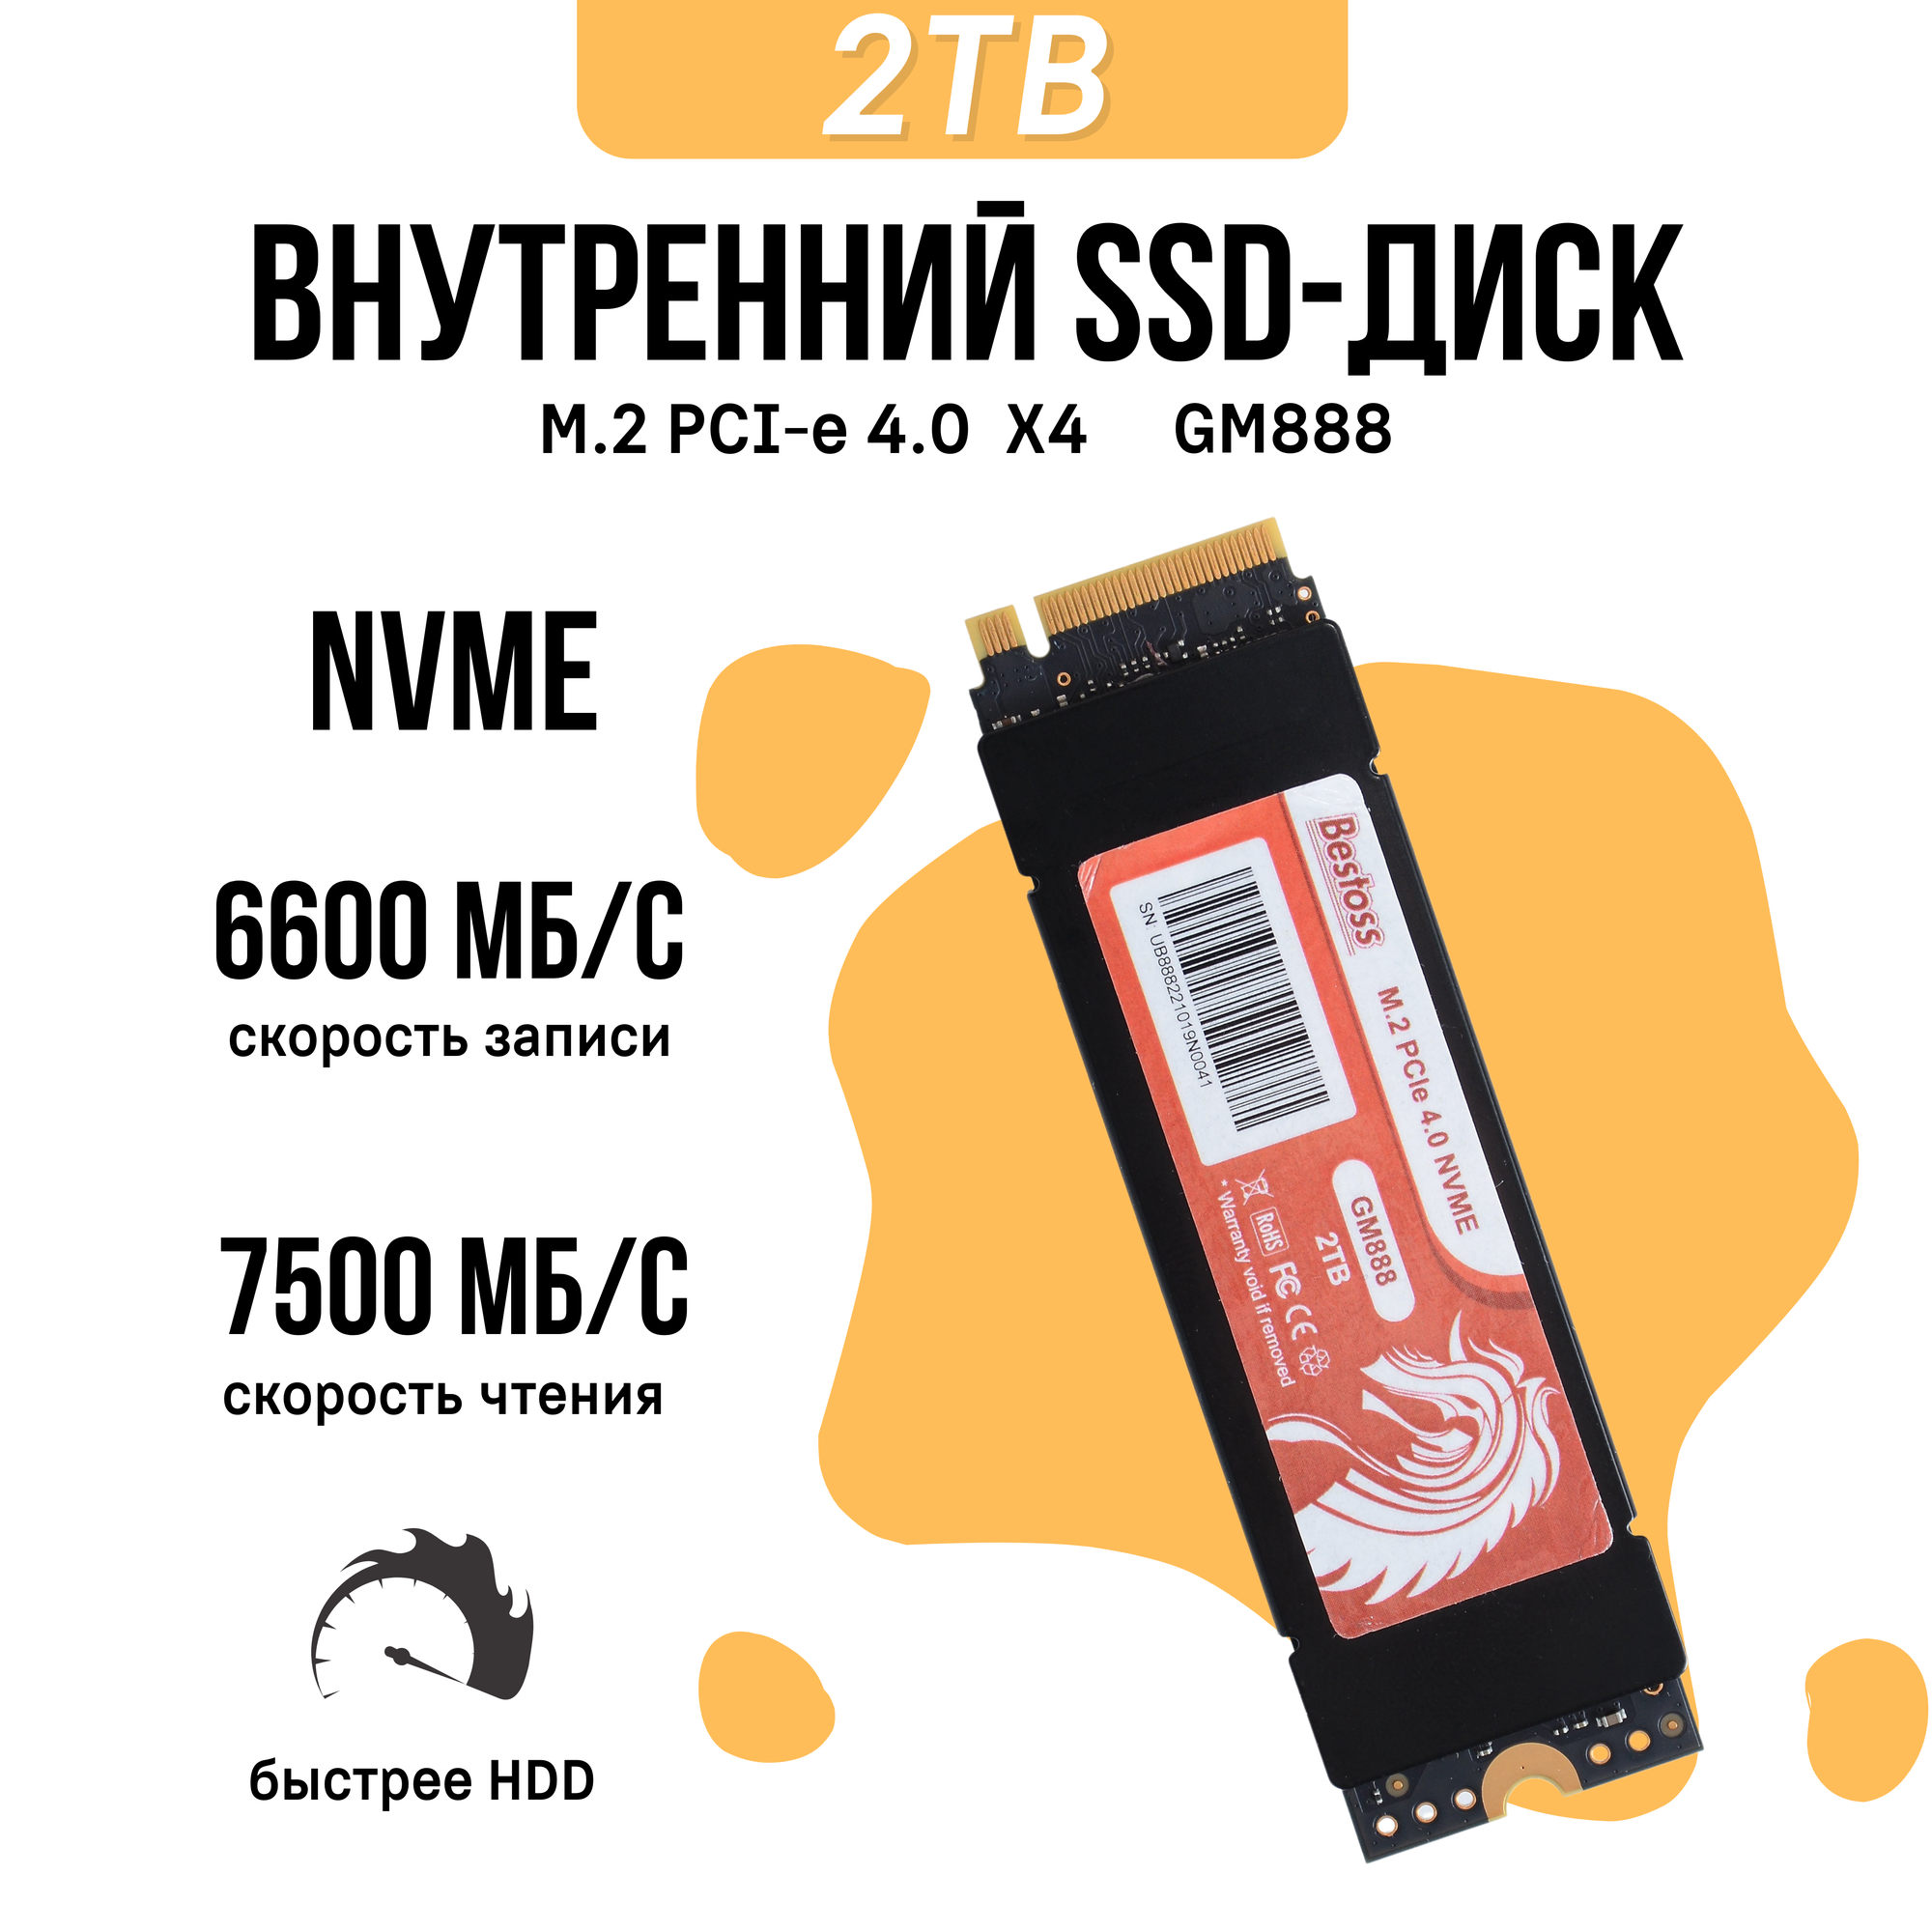 Внутренний SSD диск Bestoss M.2 NVMe, PCIe x4.0 GM888/2 TB